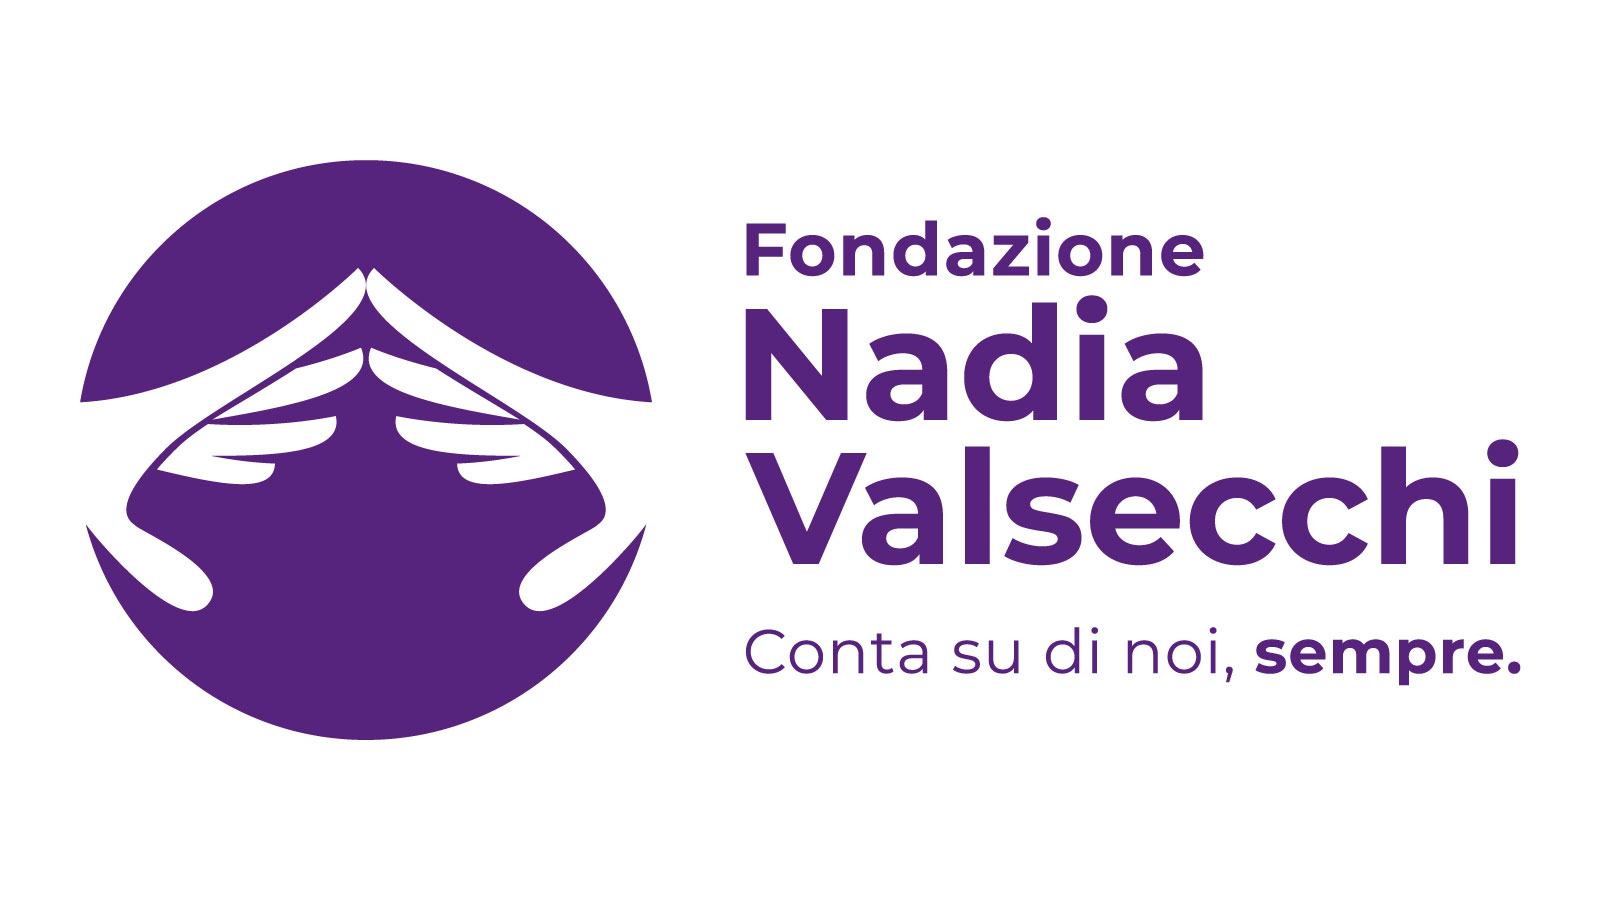 Fondazione Valsecchi logo